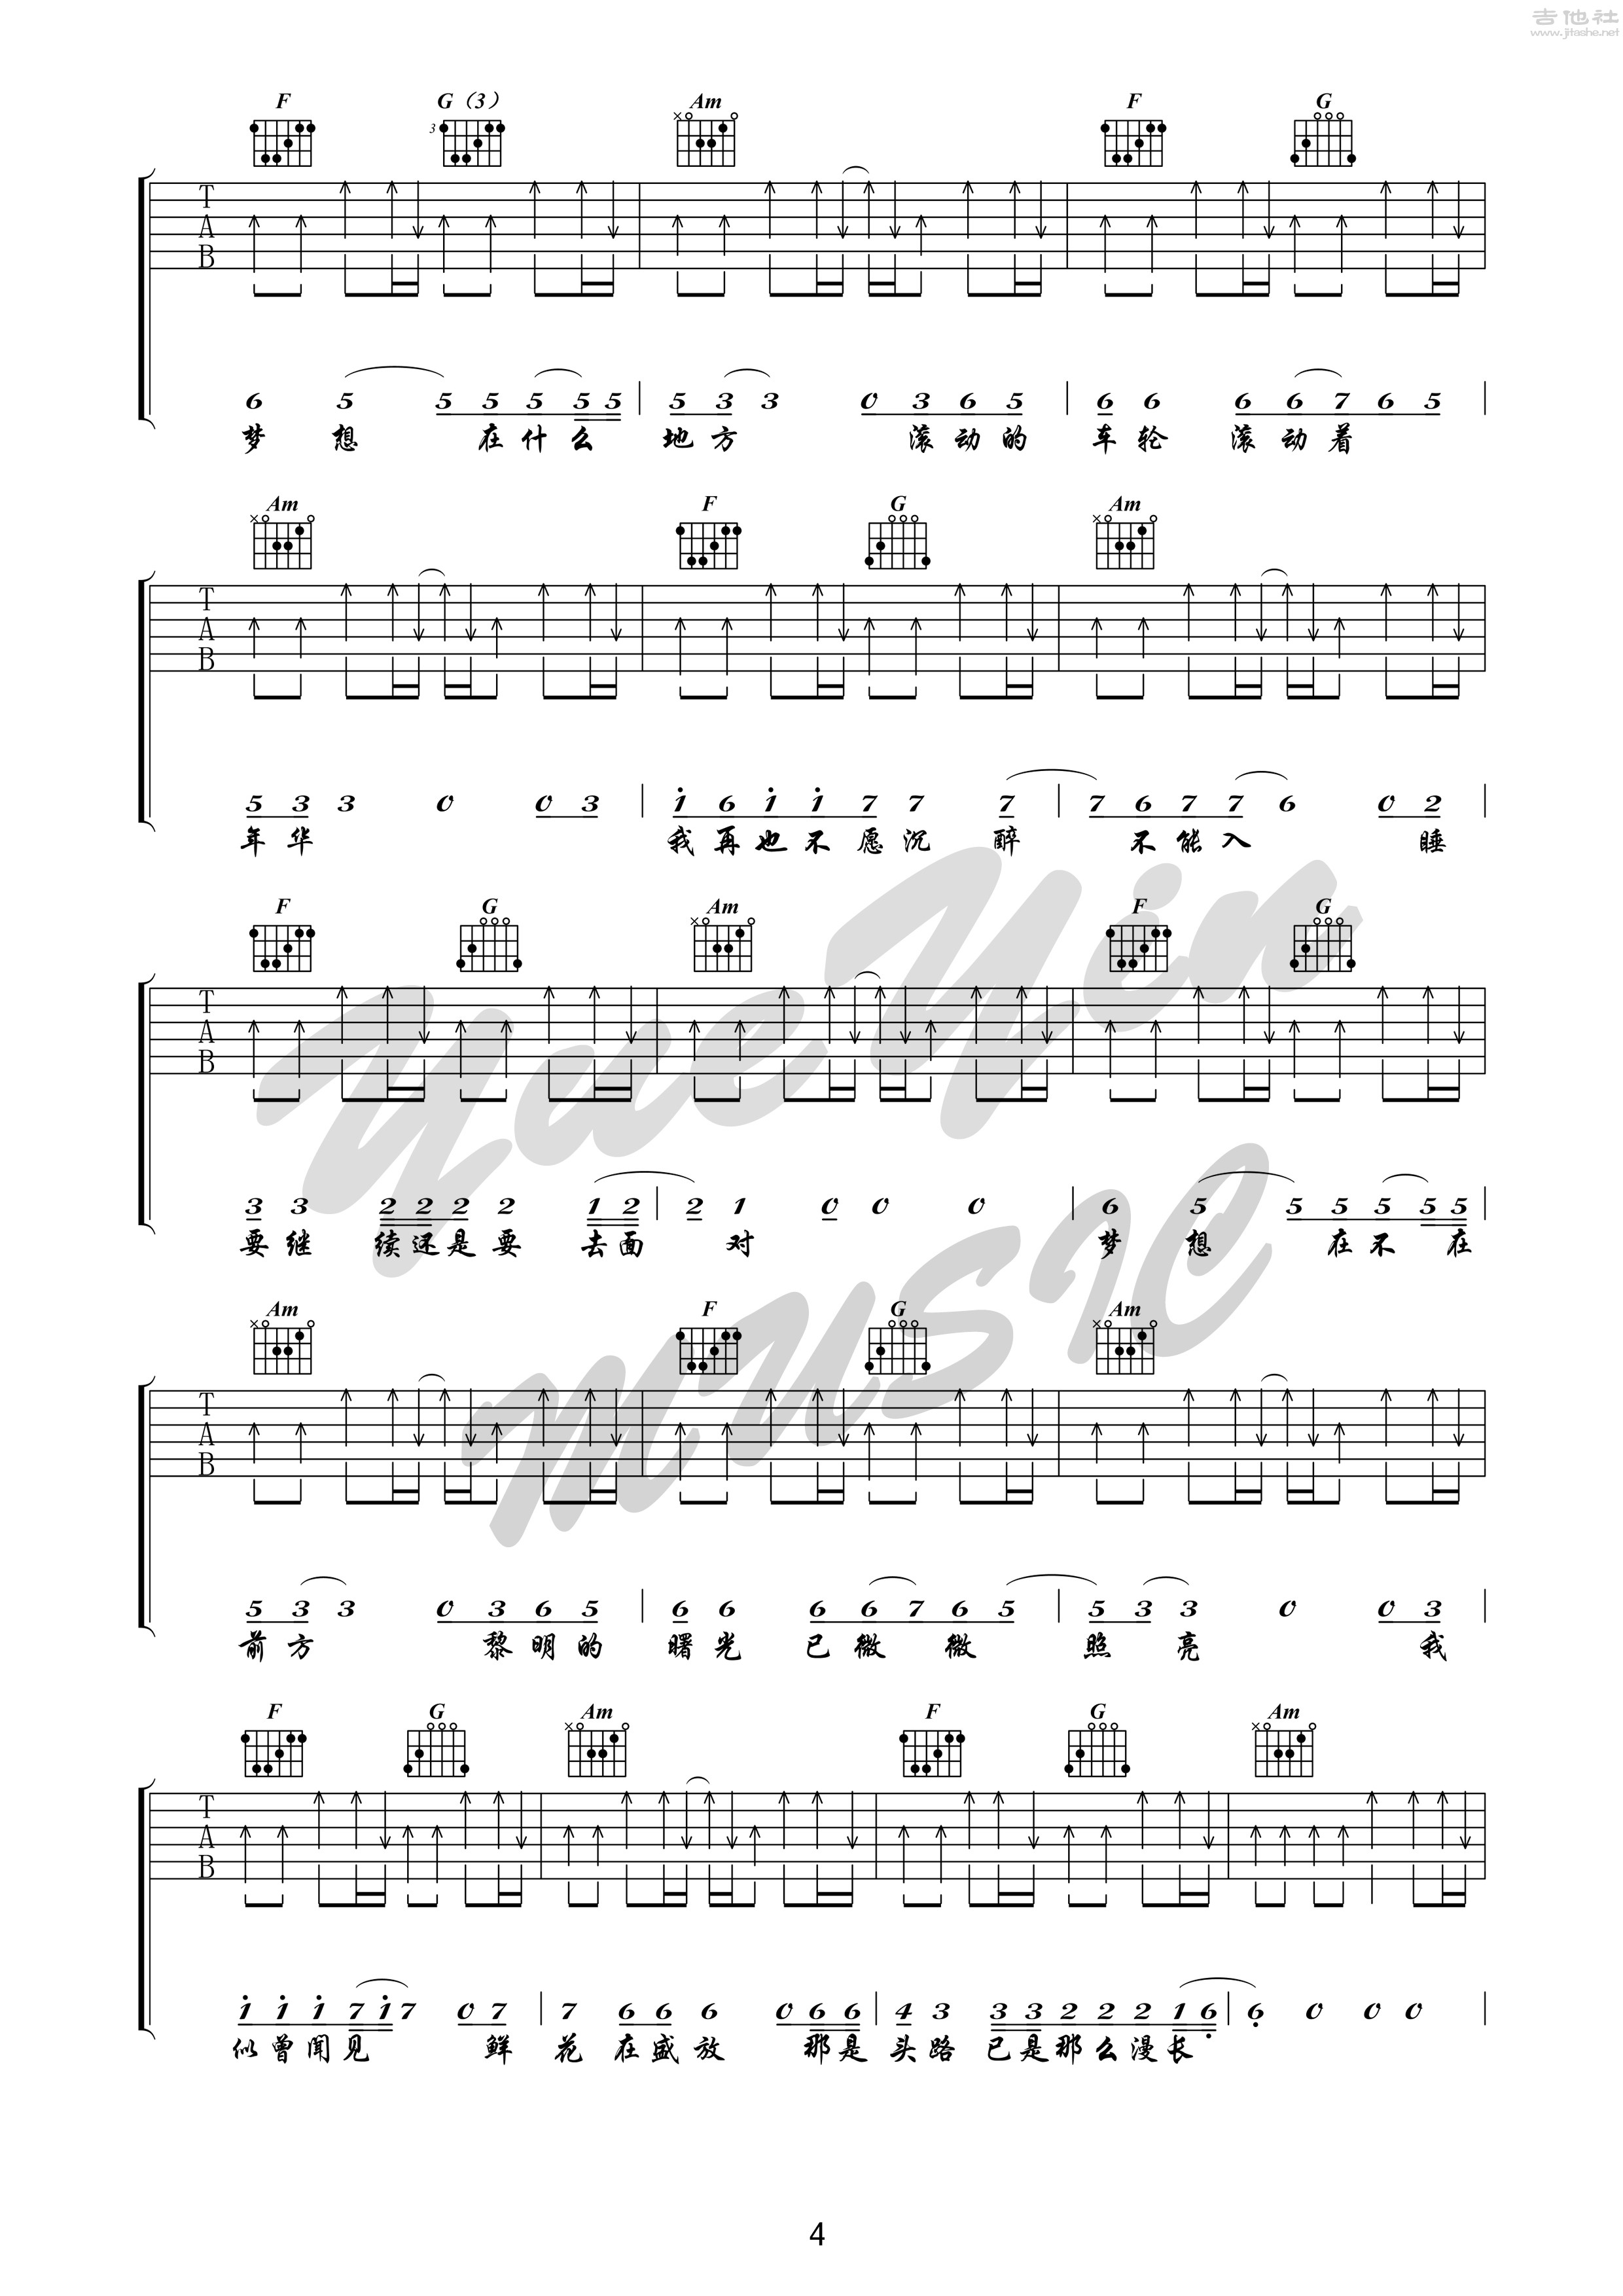 吉他 (悦音之声音乐工作室吉他教学系列 痛仰乐队系列 i )吉他谱(图片